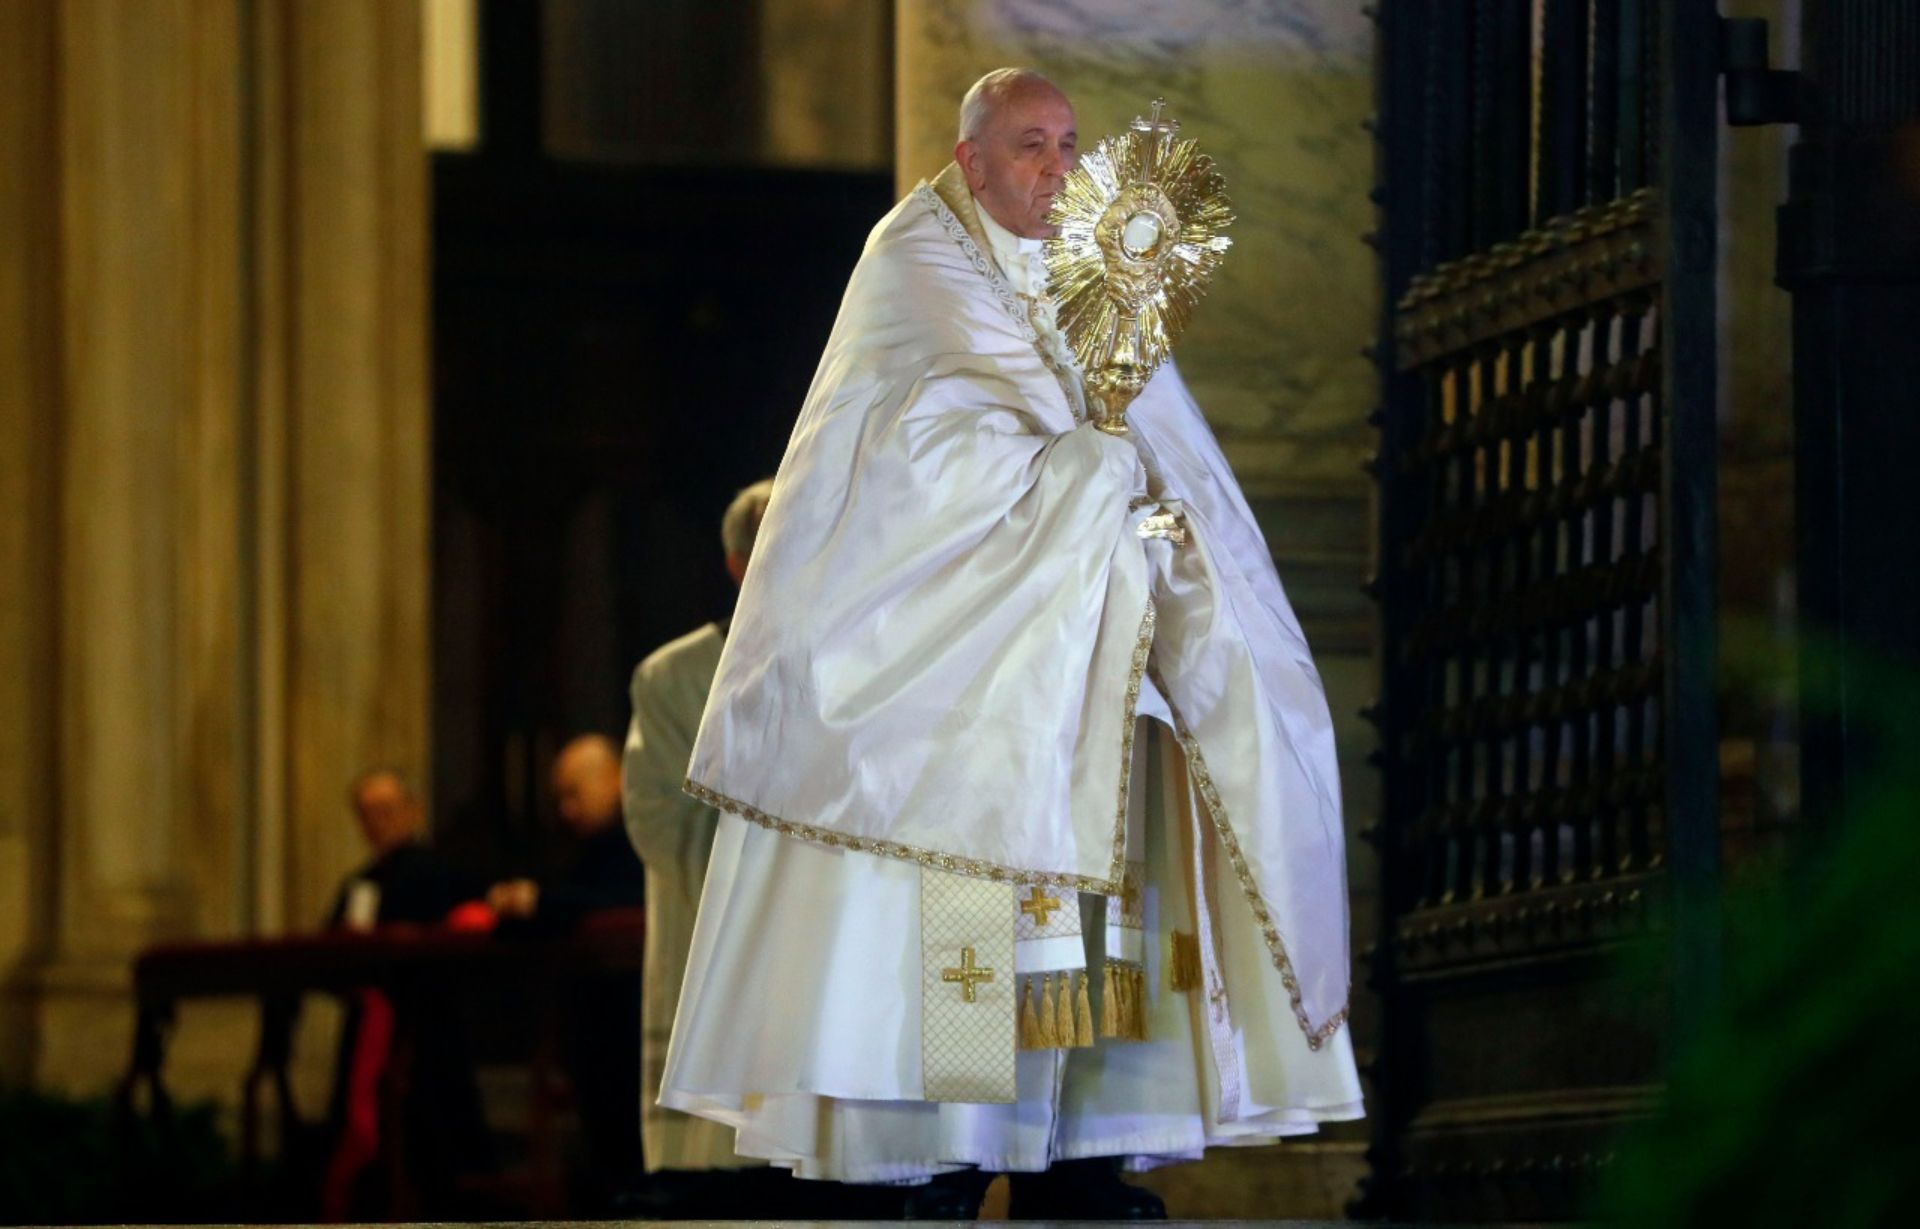 SÃO PAULO, SP (FOLHAPRESS) - Depois de cancelar sua participação em dois eventos devido a uma dor ciática crônica, o papa Francisco voltou a aparecer em público nesta sexta-feira (1°) no Vaticano....